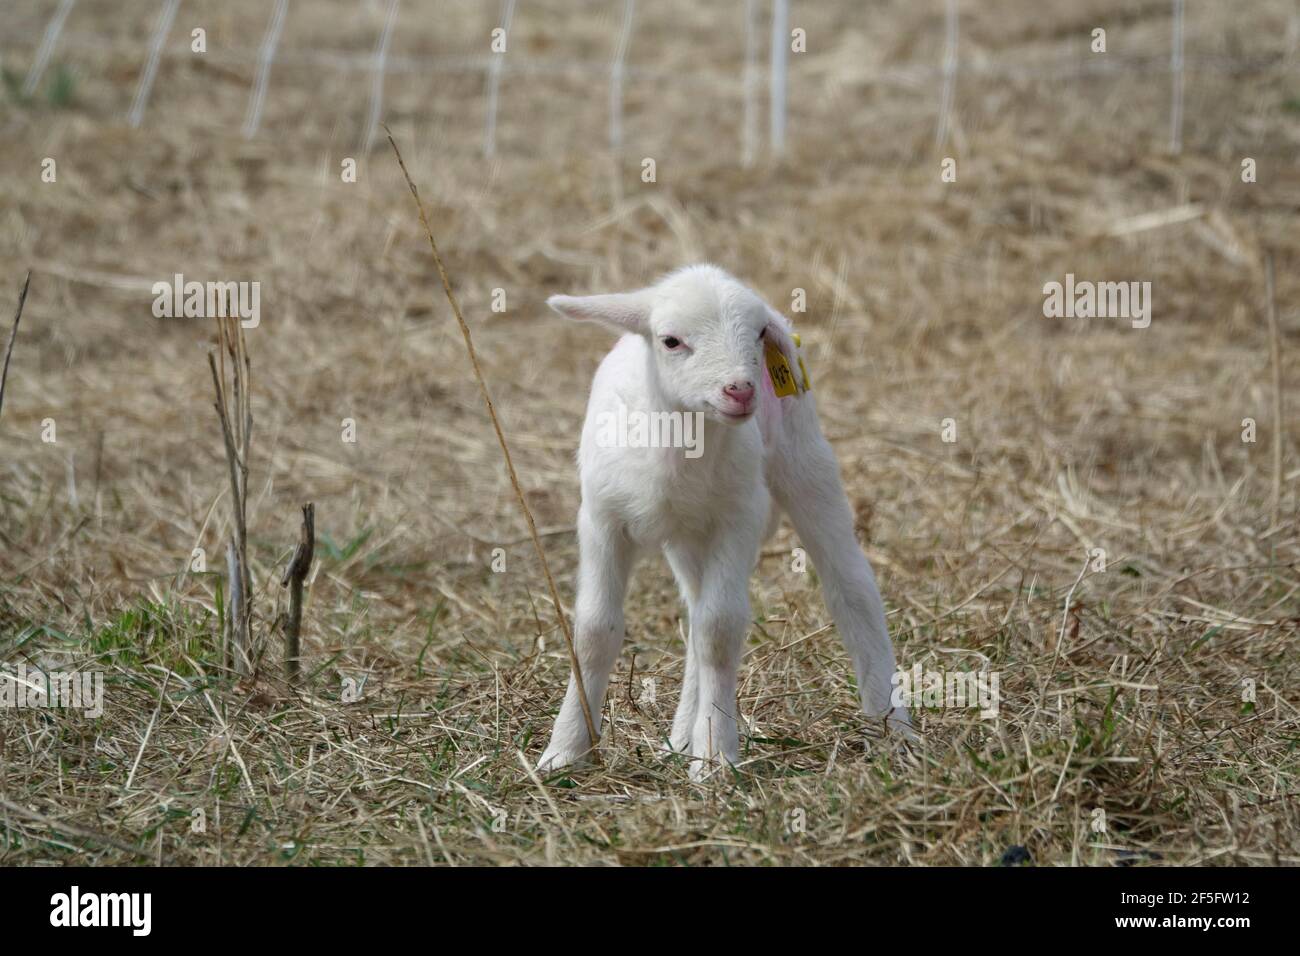 93％以上節約 DimMoire BABY SHEEPファーパーカー White 羊 ilam.org